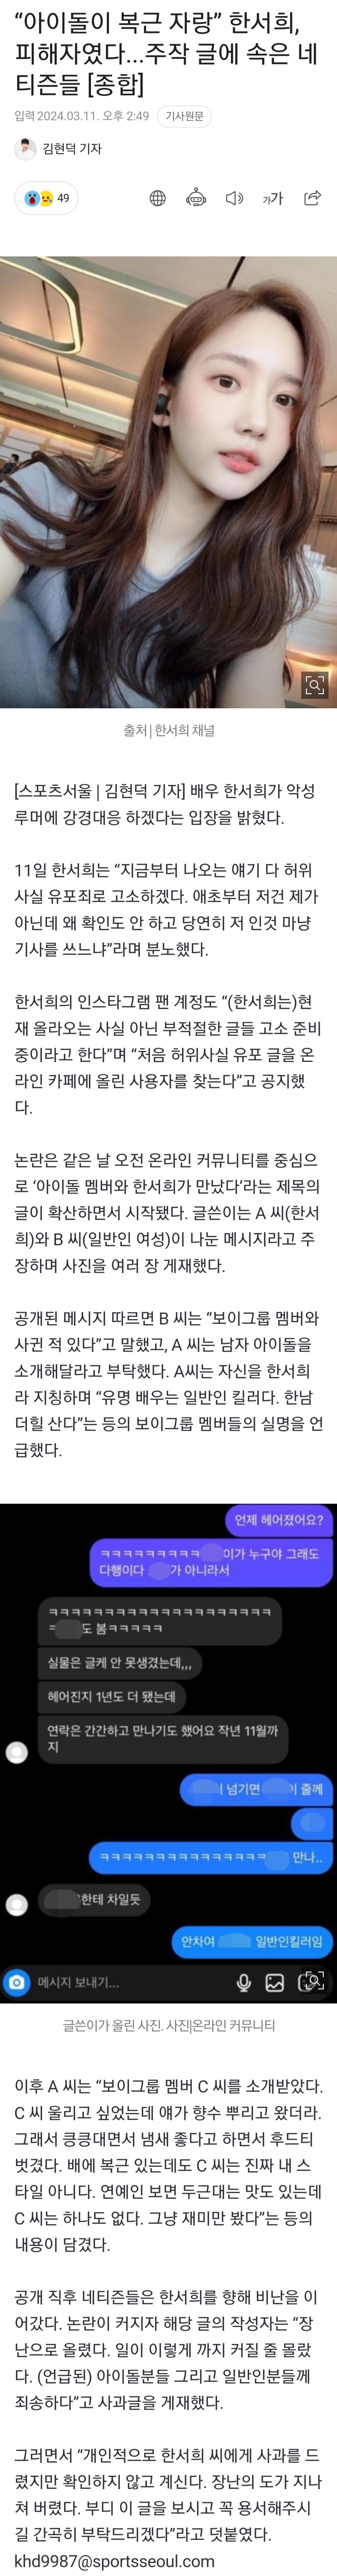 [정보/소식] "아이돌이 복근 자랑” 한서희, 피해자였다...주작 글에 속은 네티즌들 [종합] | 인스티즈